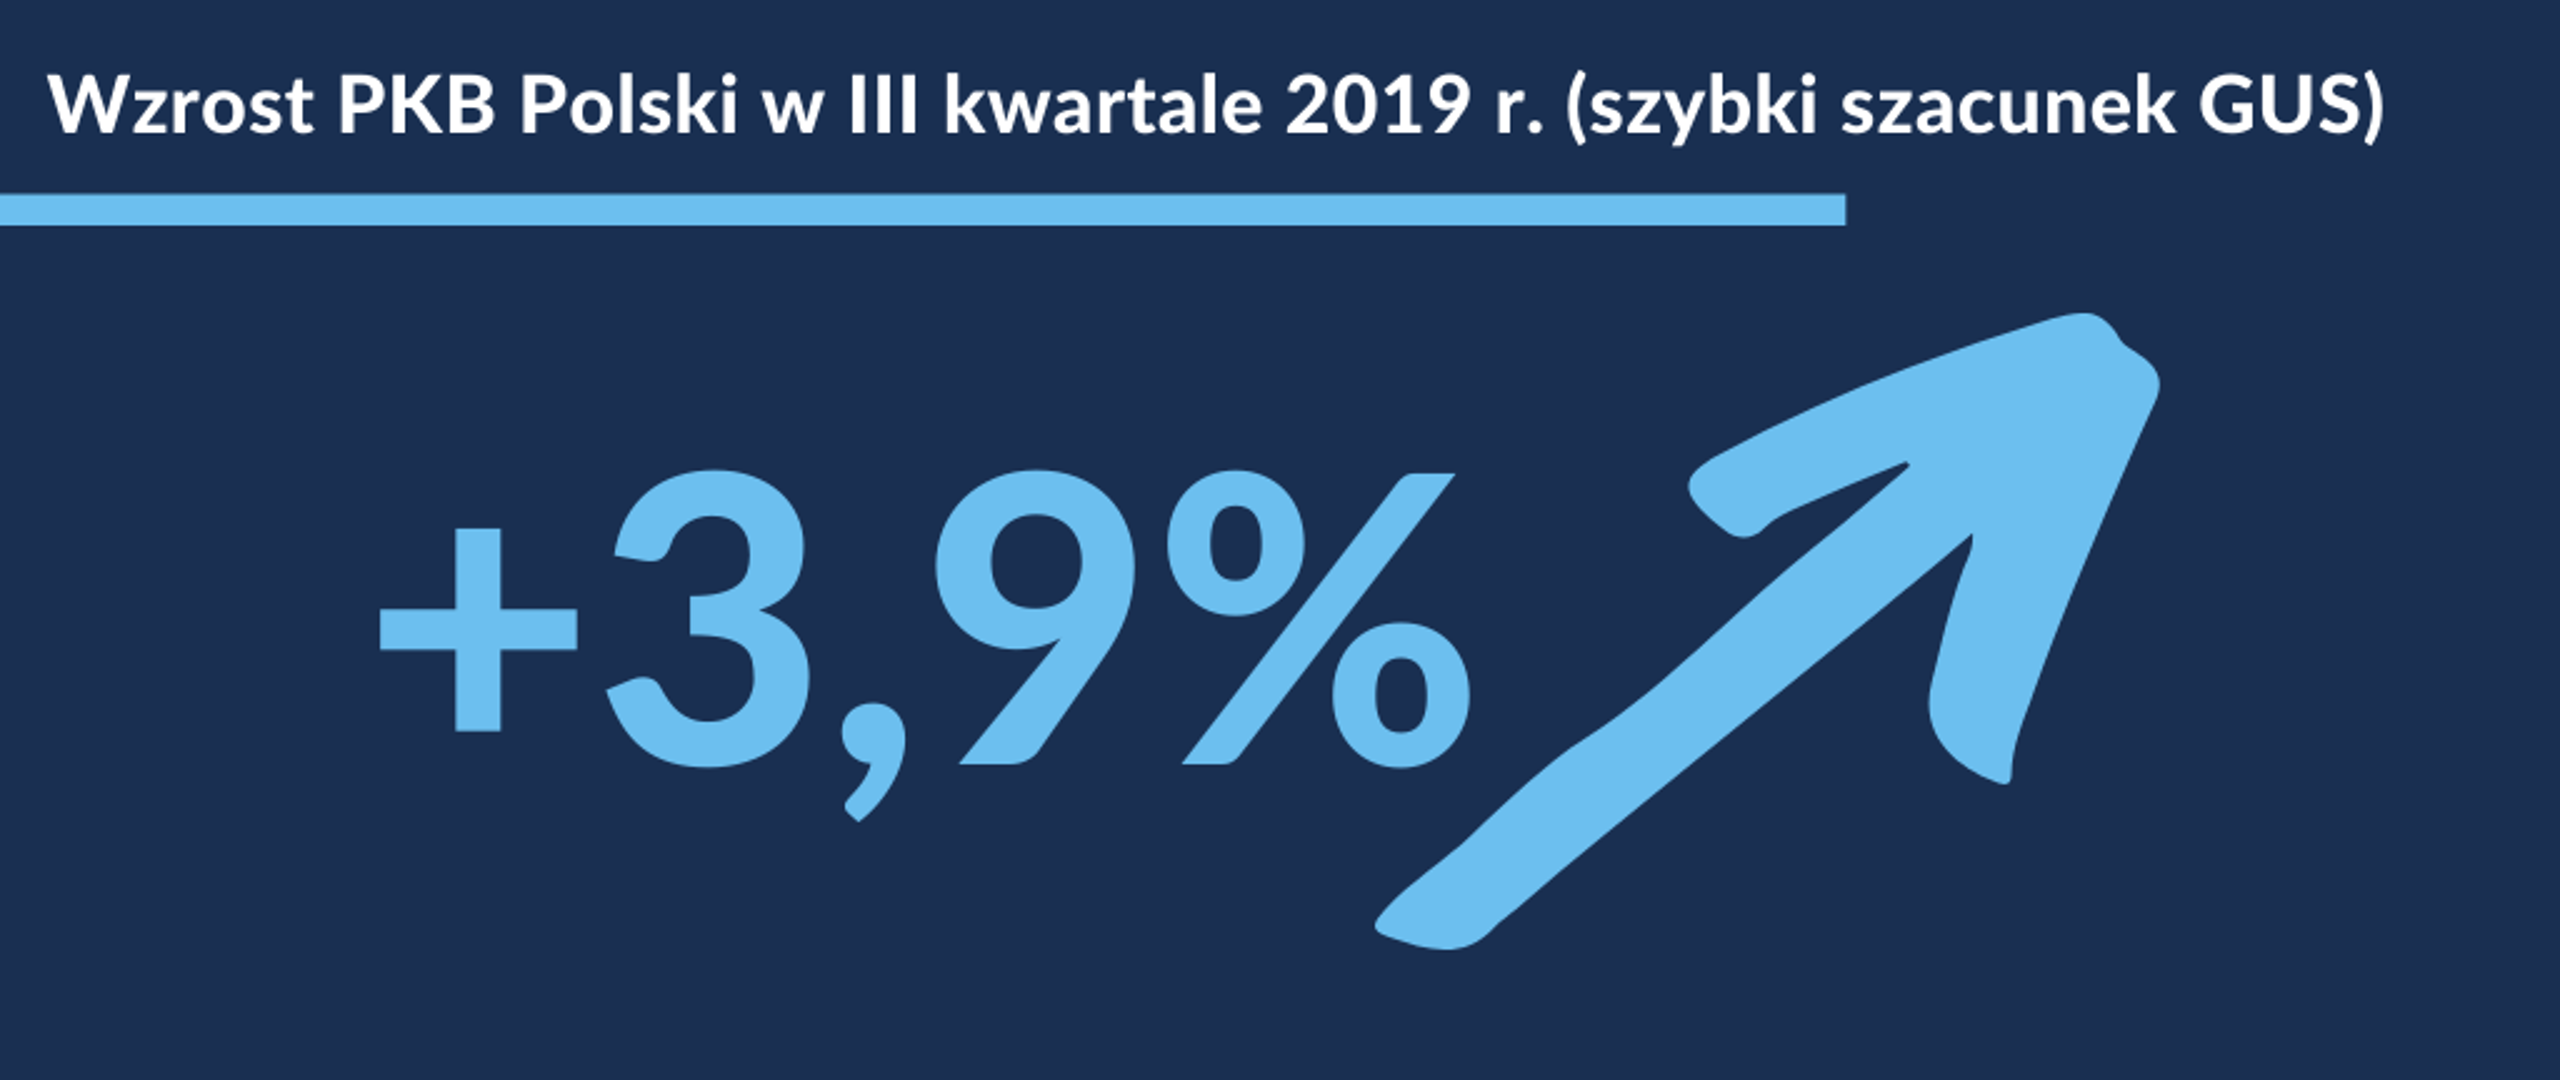 Grafika. Wzrost PKB Polski w III kwartale 2019 r. (Szybki szacunek GUS), +3,9% i strzałka w górę